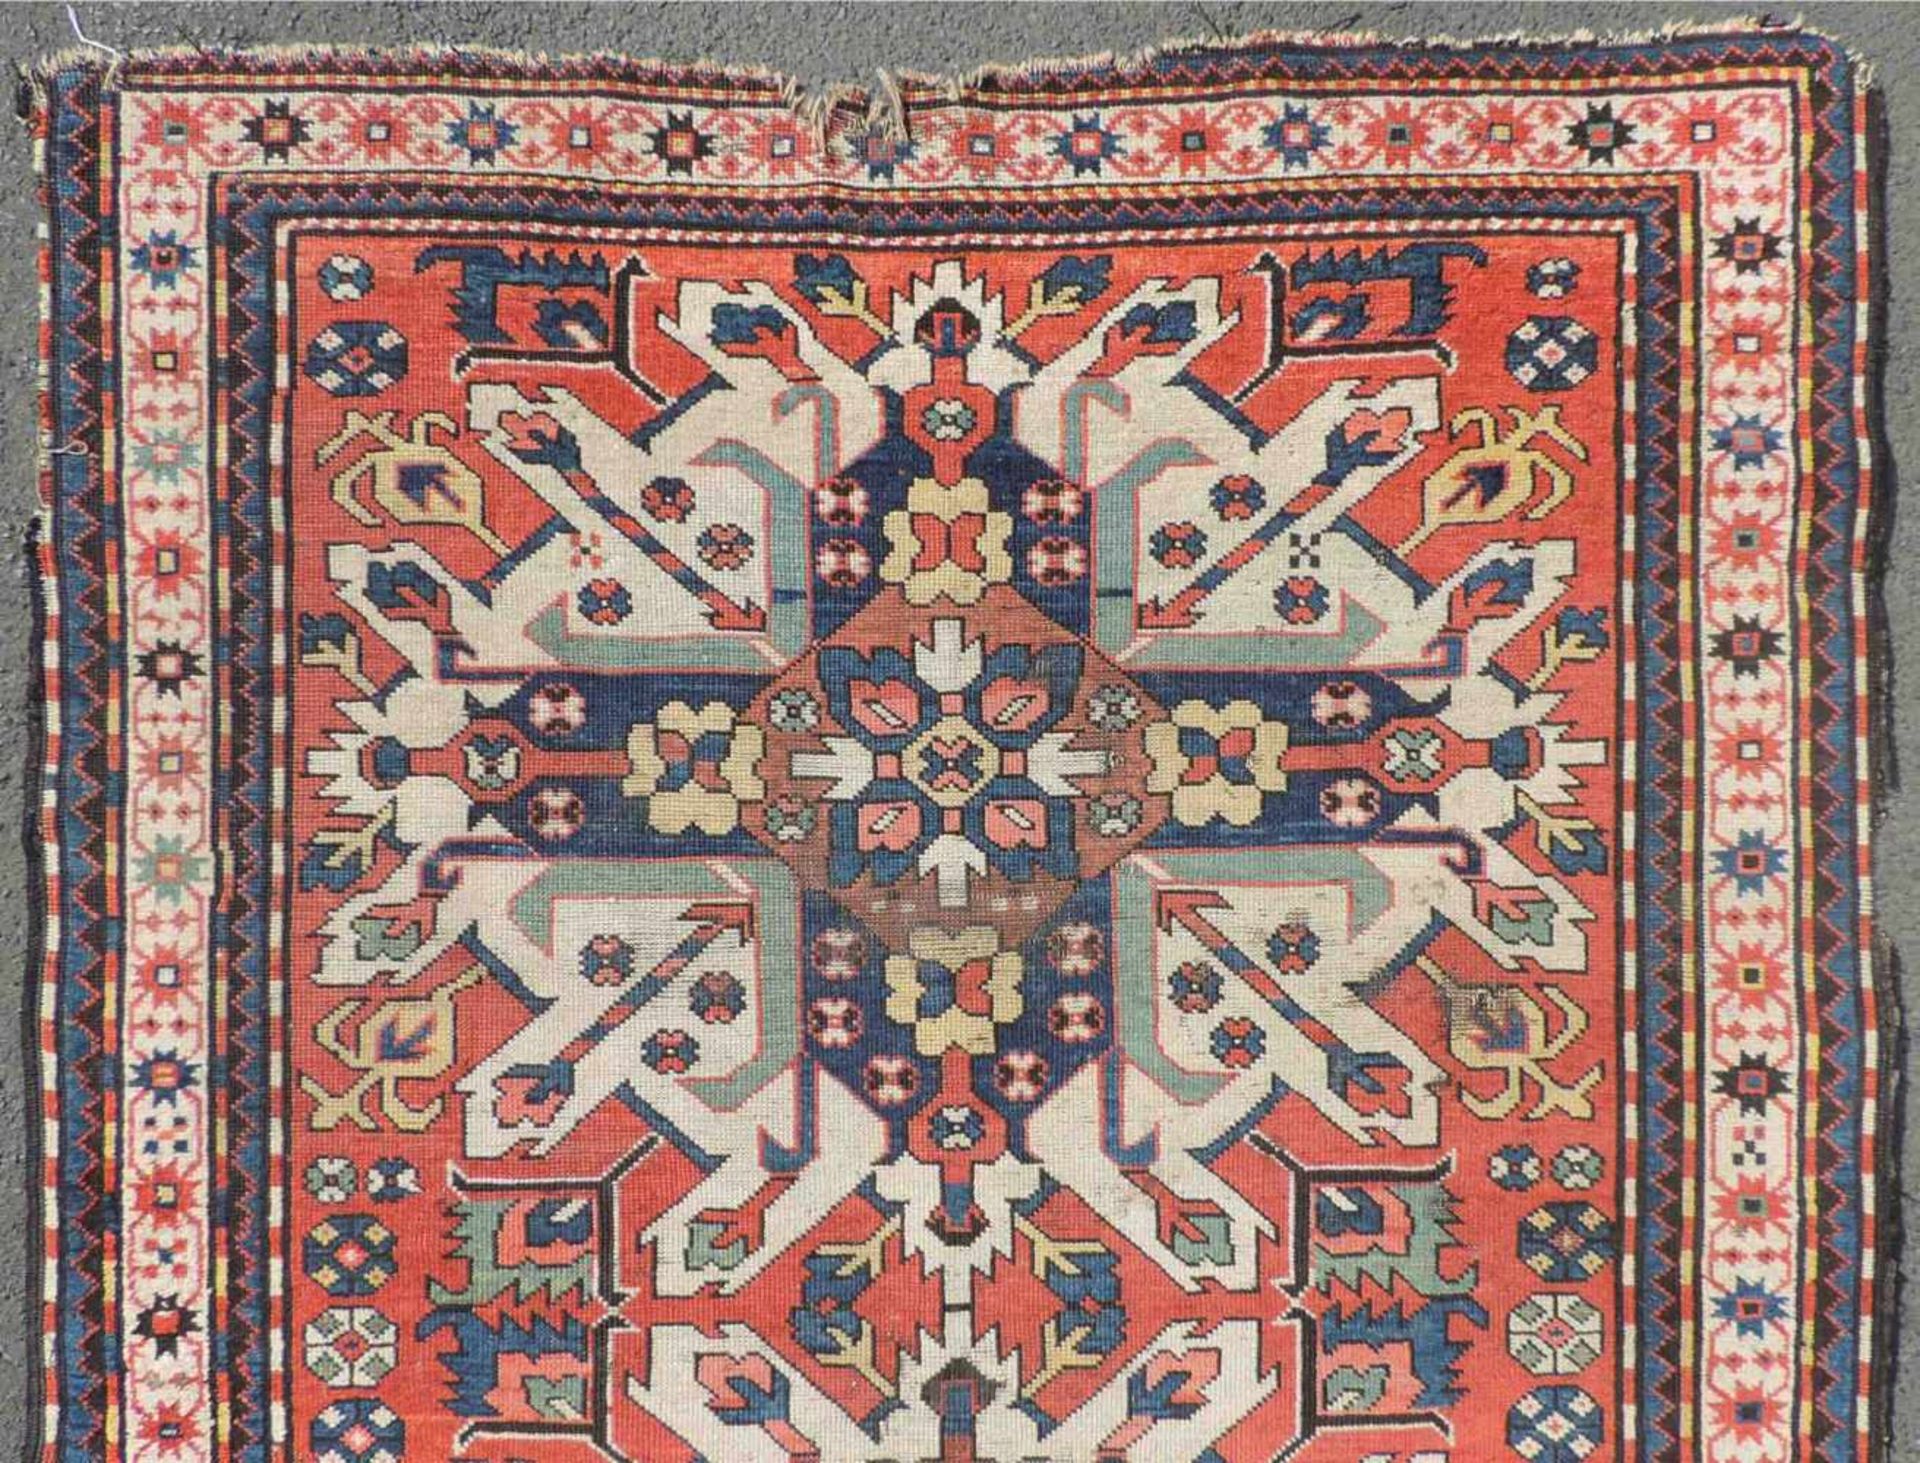 Tschelaberd "Adler Kasak" Teppich. Kaukasus. Antik, um 1880. 266 cm x 120 cm. Handgeknüpft. Wolle - Image 7 of 12